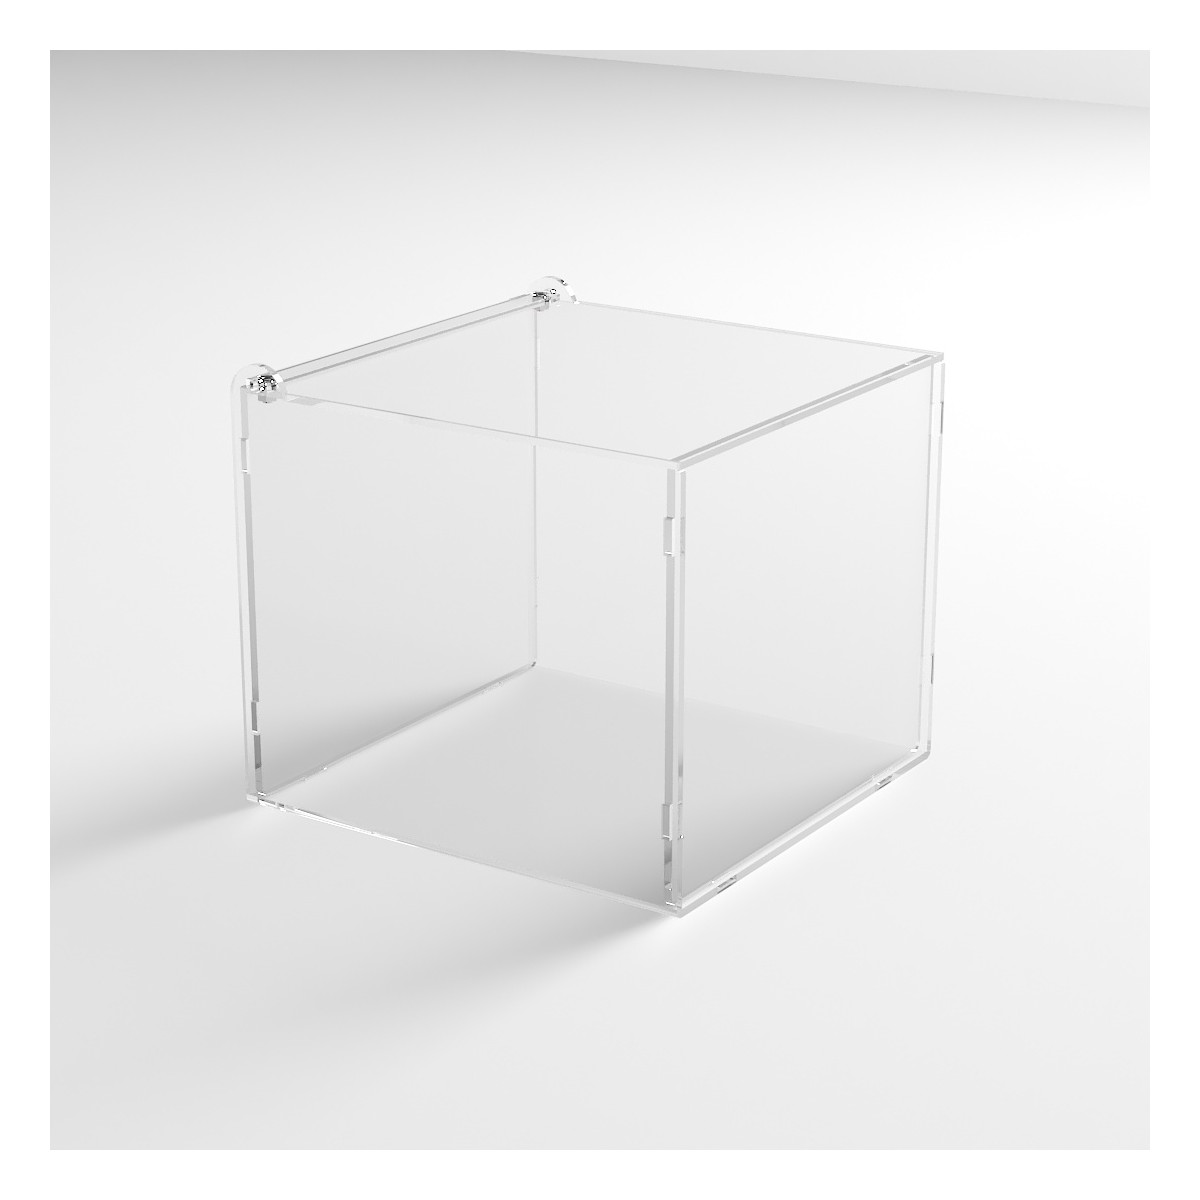 E-1193 PLE - Porta legumi in plexiglass trasparente a 1 scomparto con sportello superiore a ribalta - Misure: 29 x 29 x H25 cm